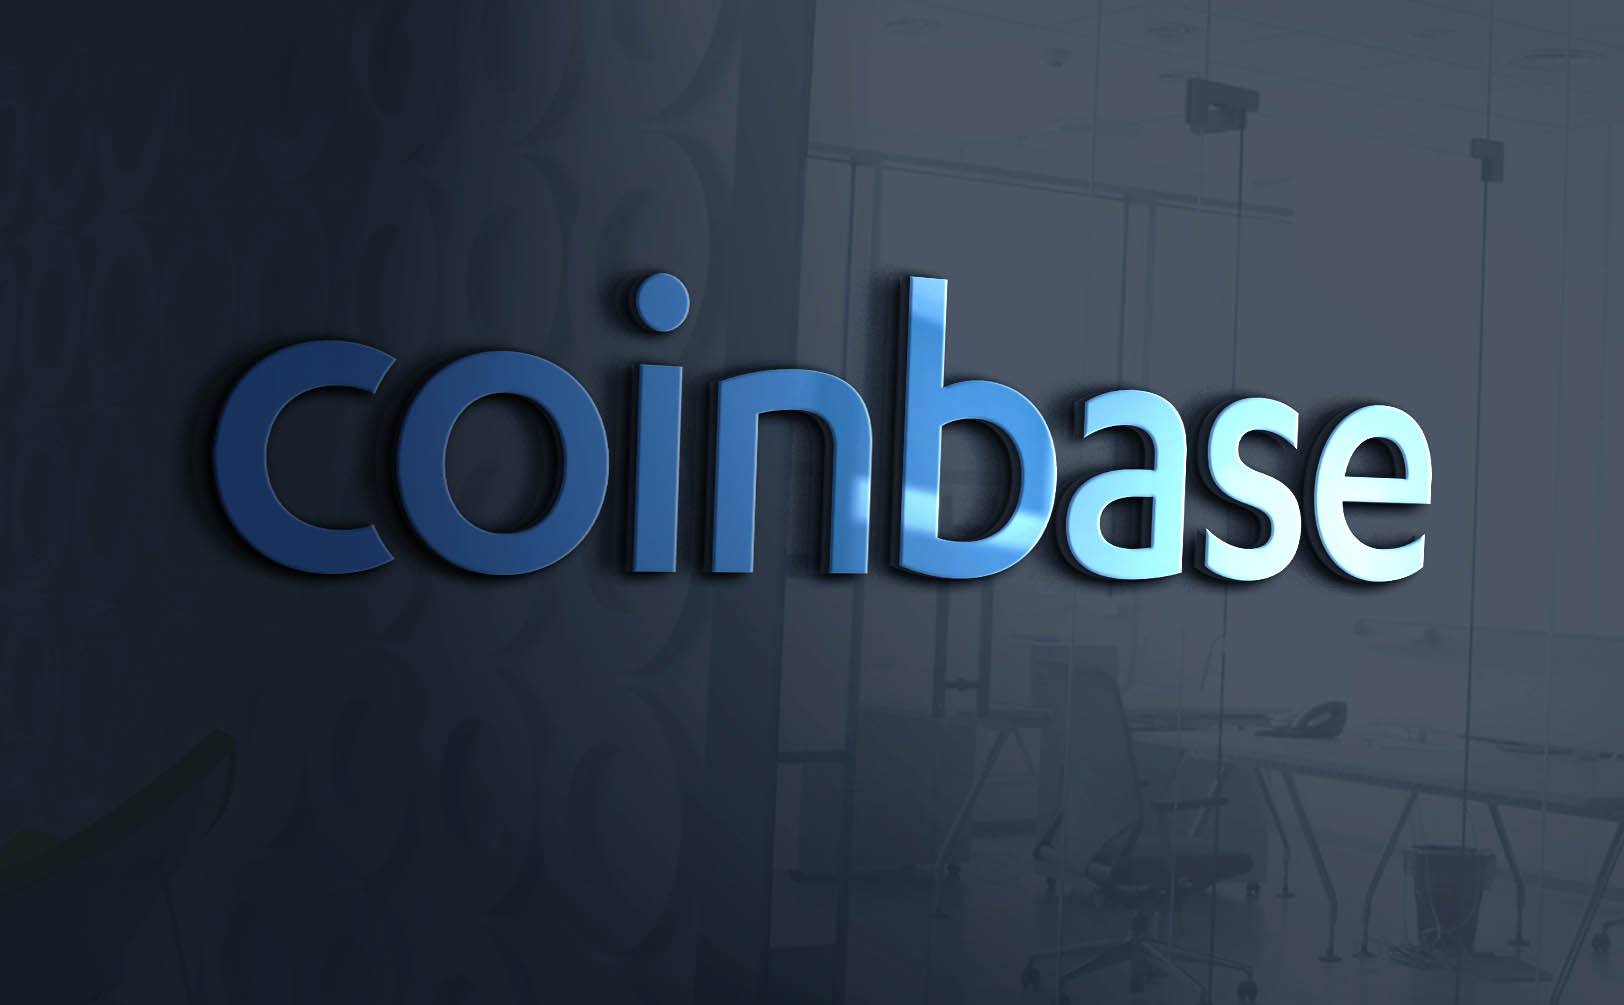 Coinbase shares